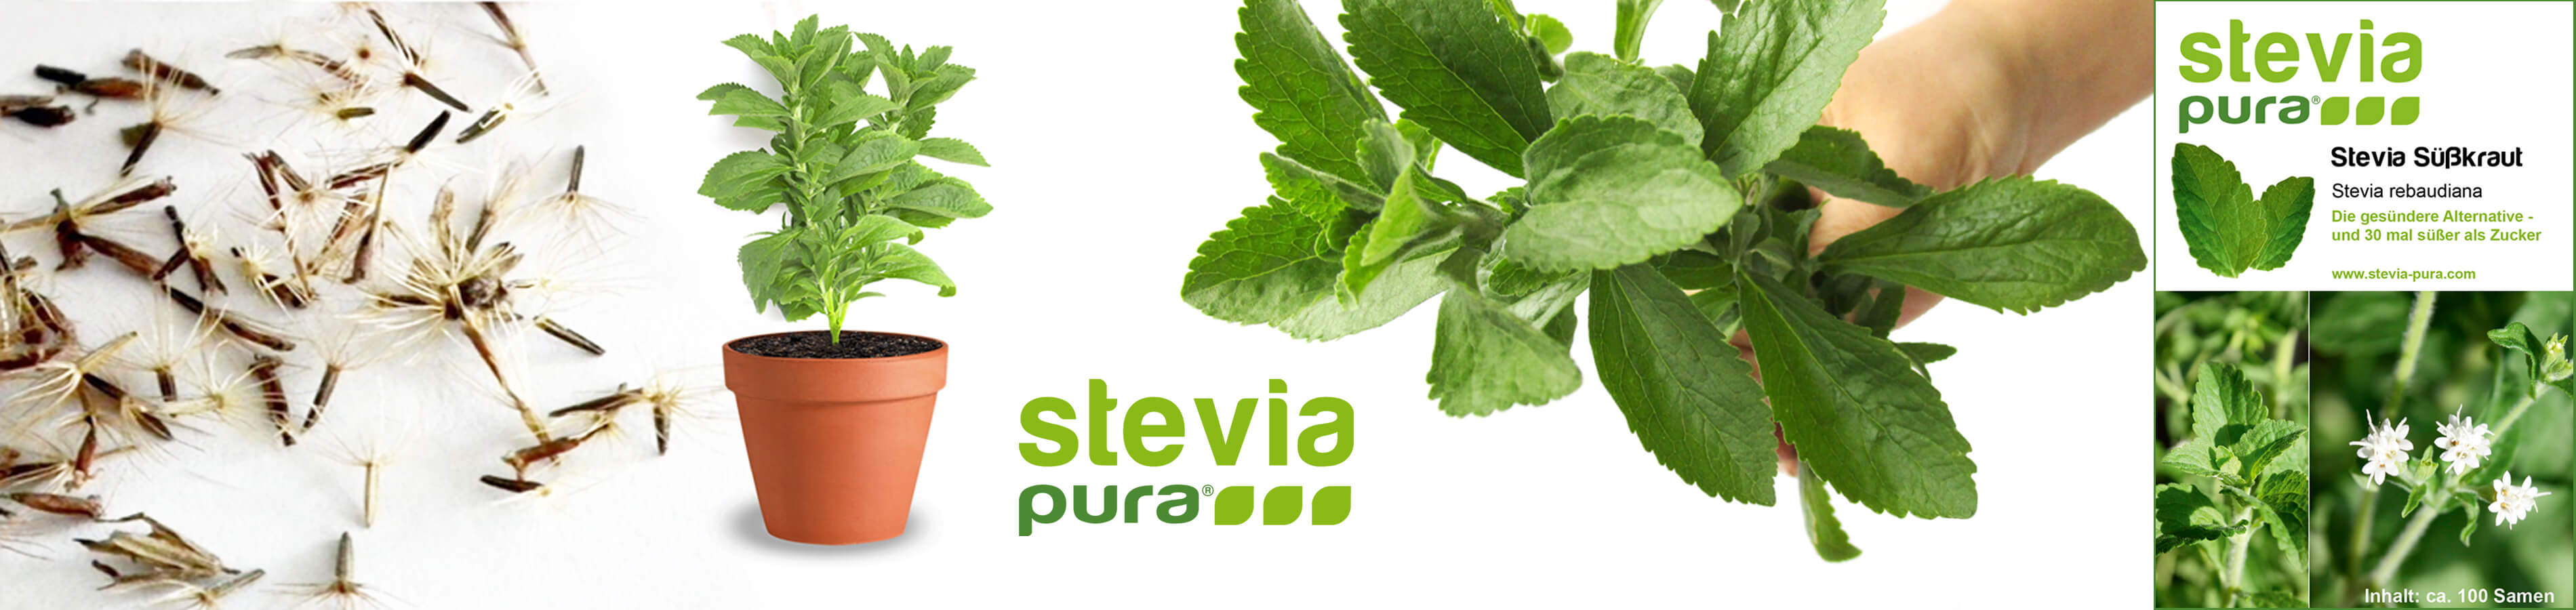 Semillas de Stevia eStevia rebaudiana Hierba dulce Miel...